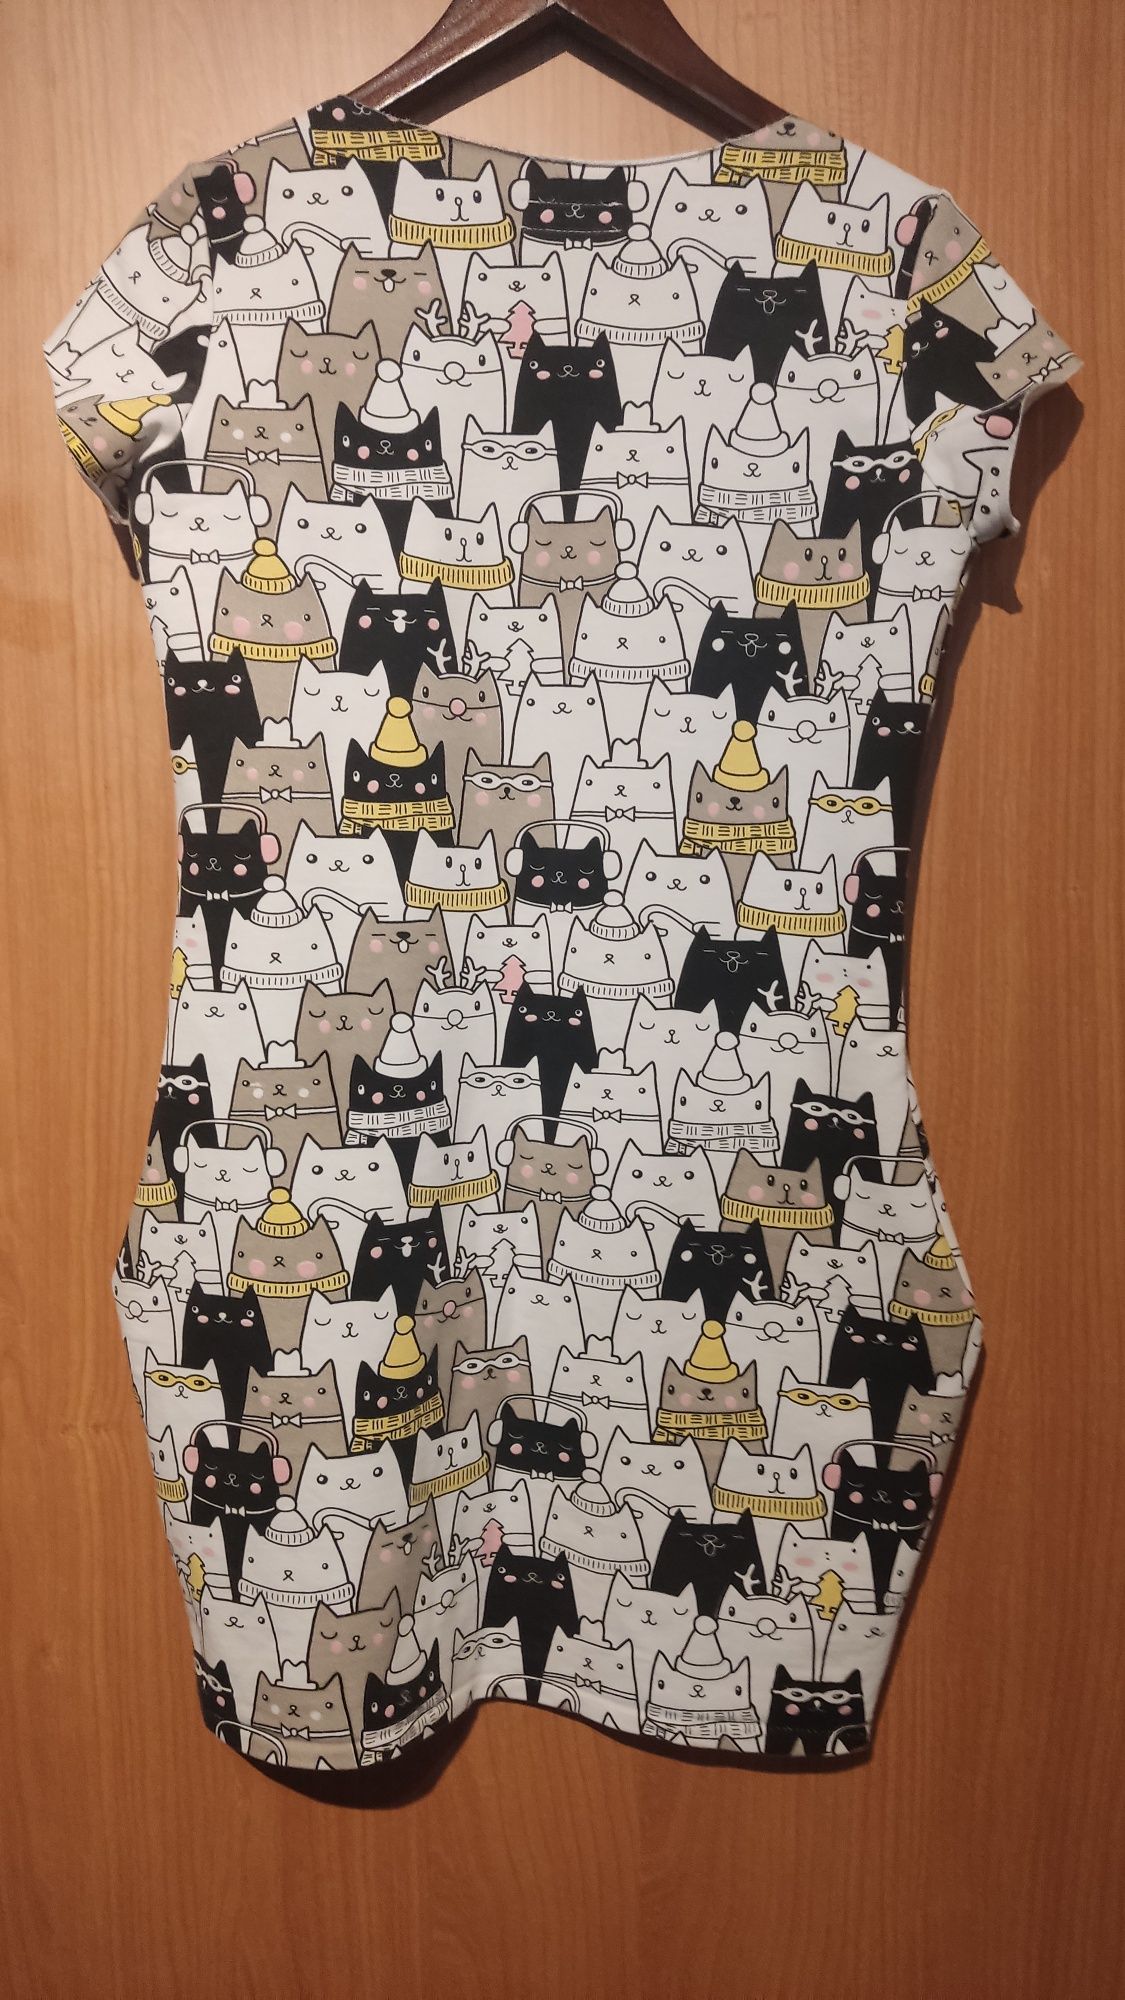 Paczka zestaw ubrań z kotami kot dla kociary kawaii japan style